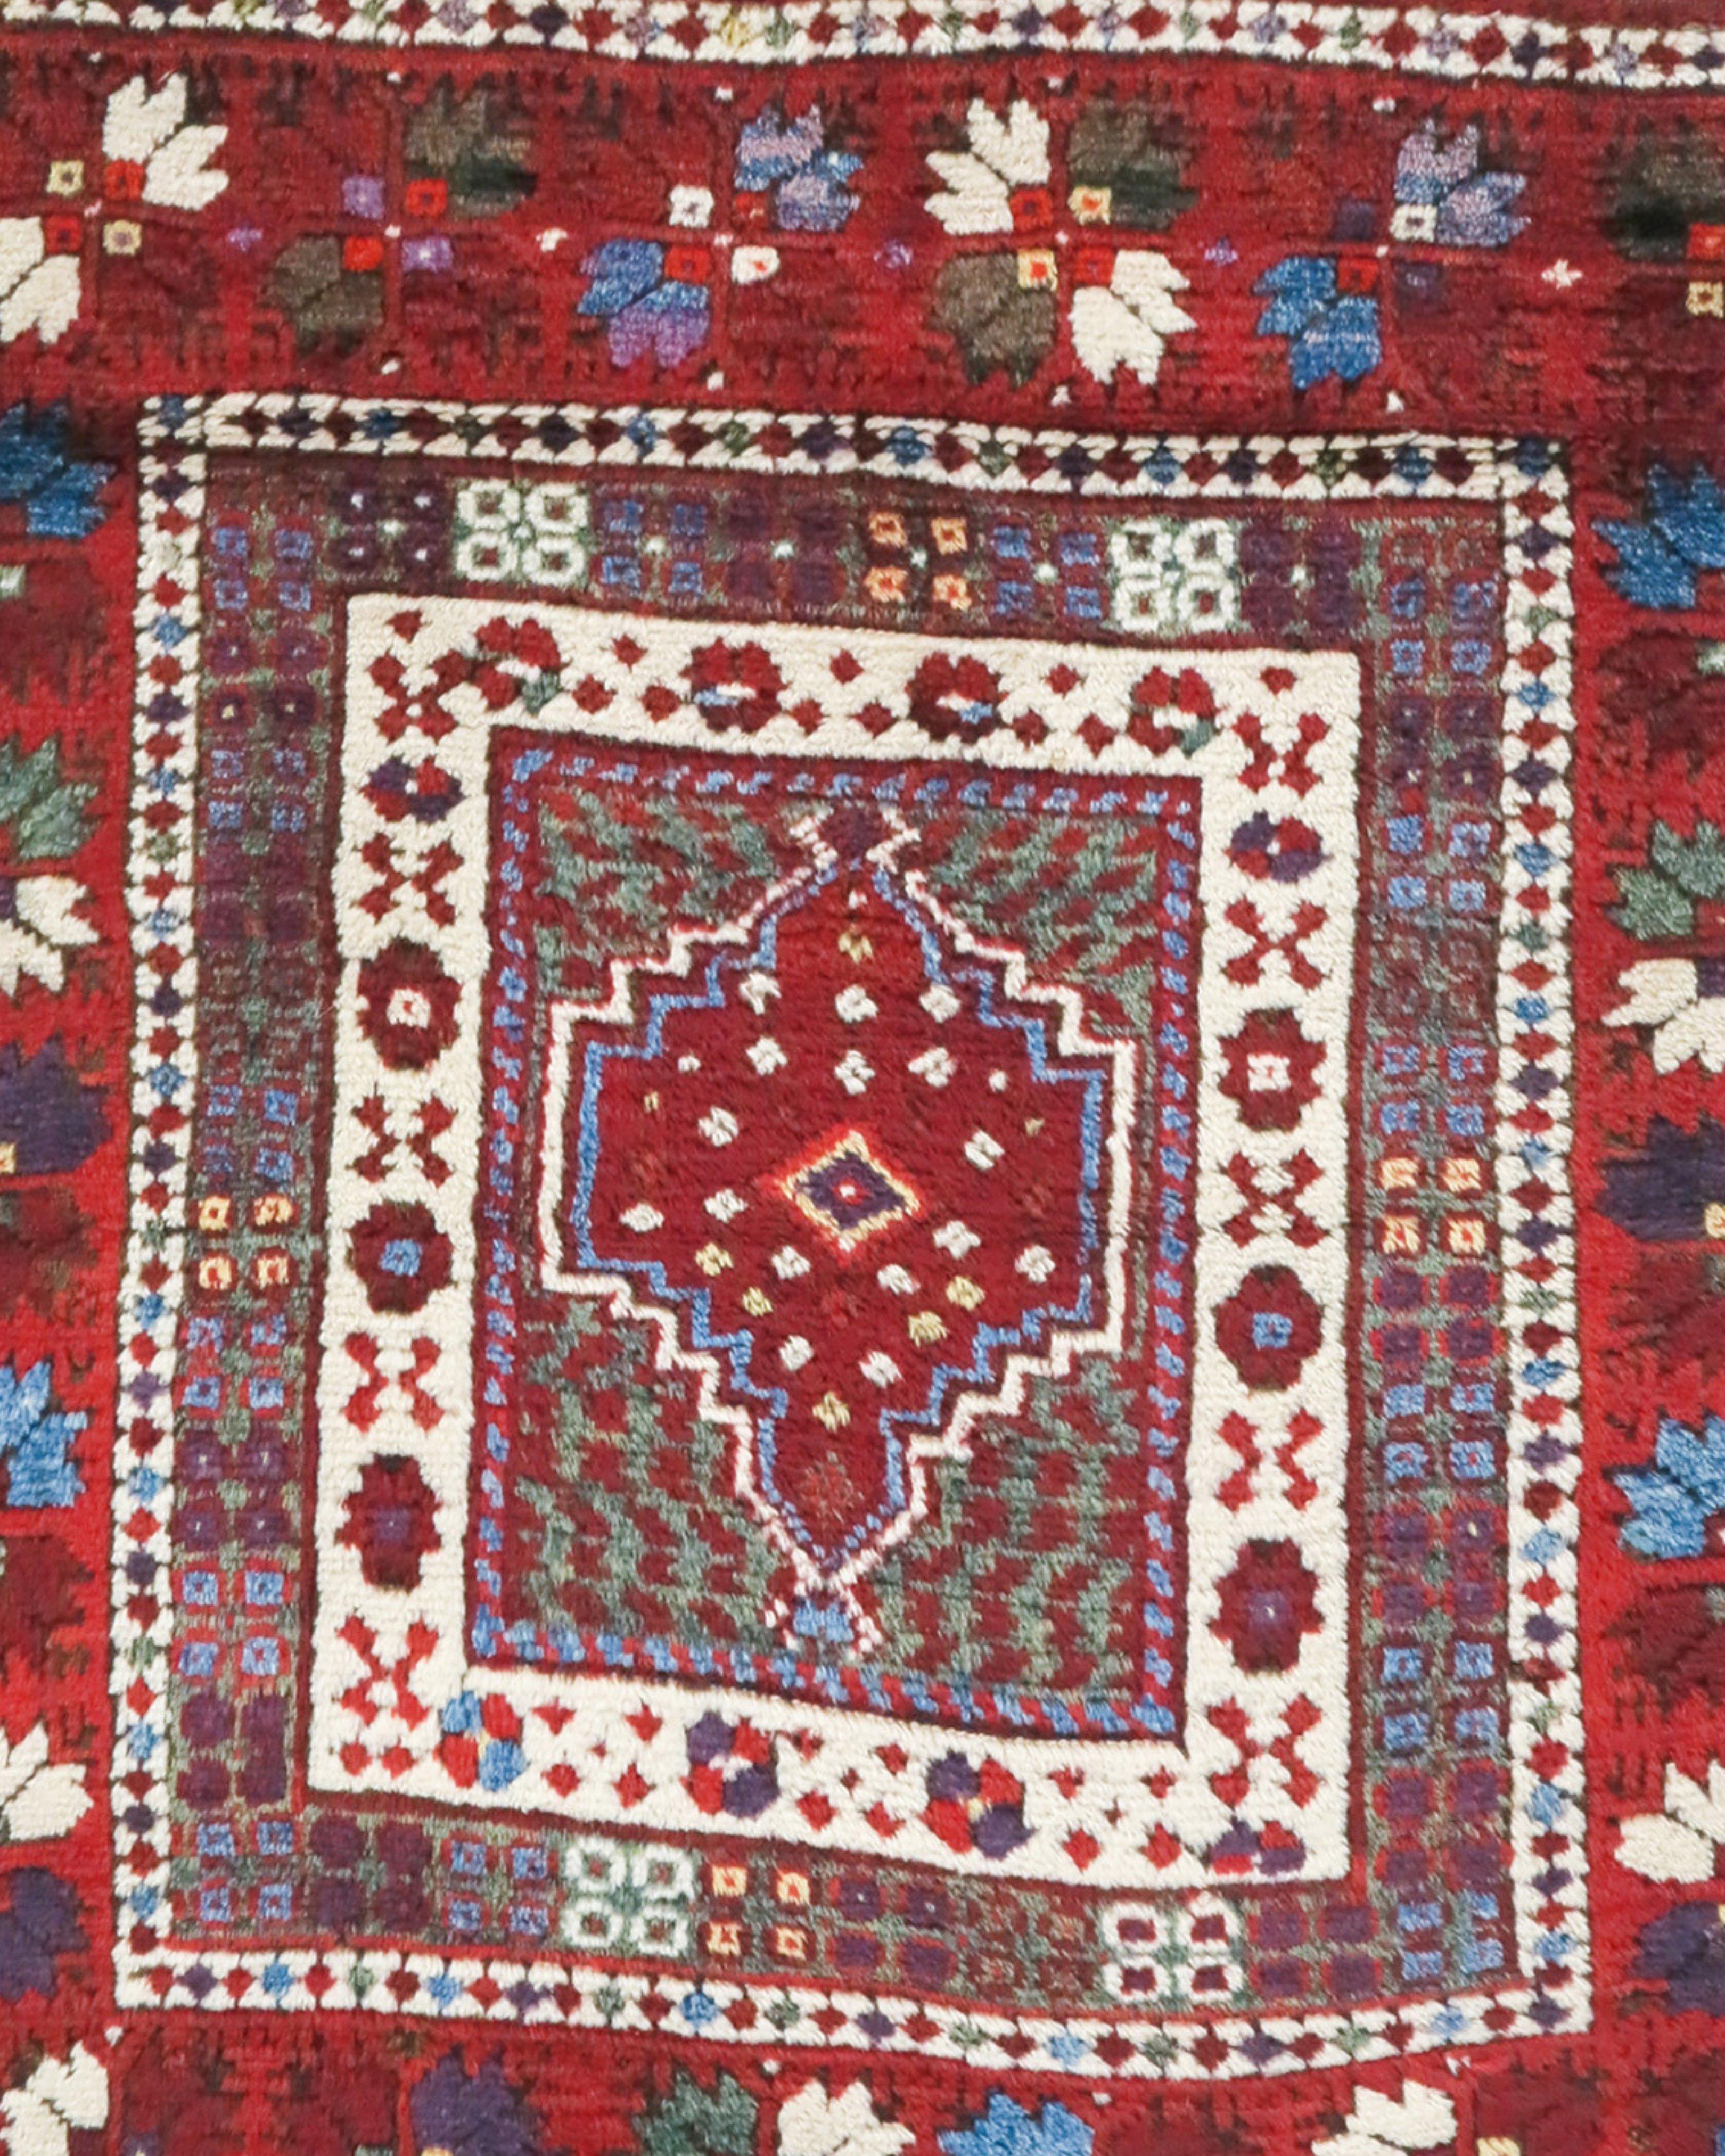 Ancien tapis turc Yaqcibidir, début du 20e siècle

Informations supplémentaires :
Dimensions : 3'11